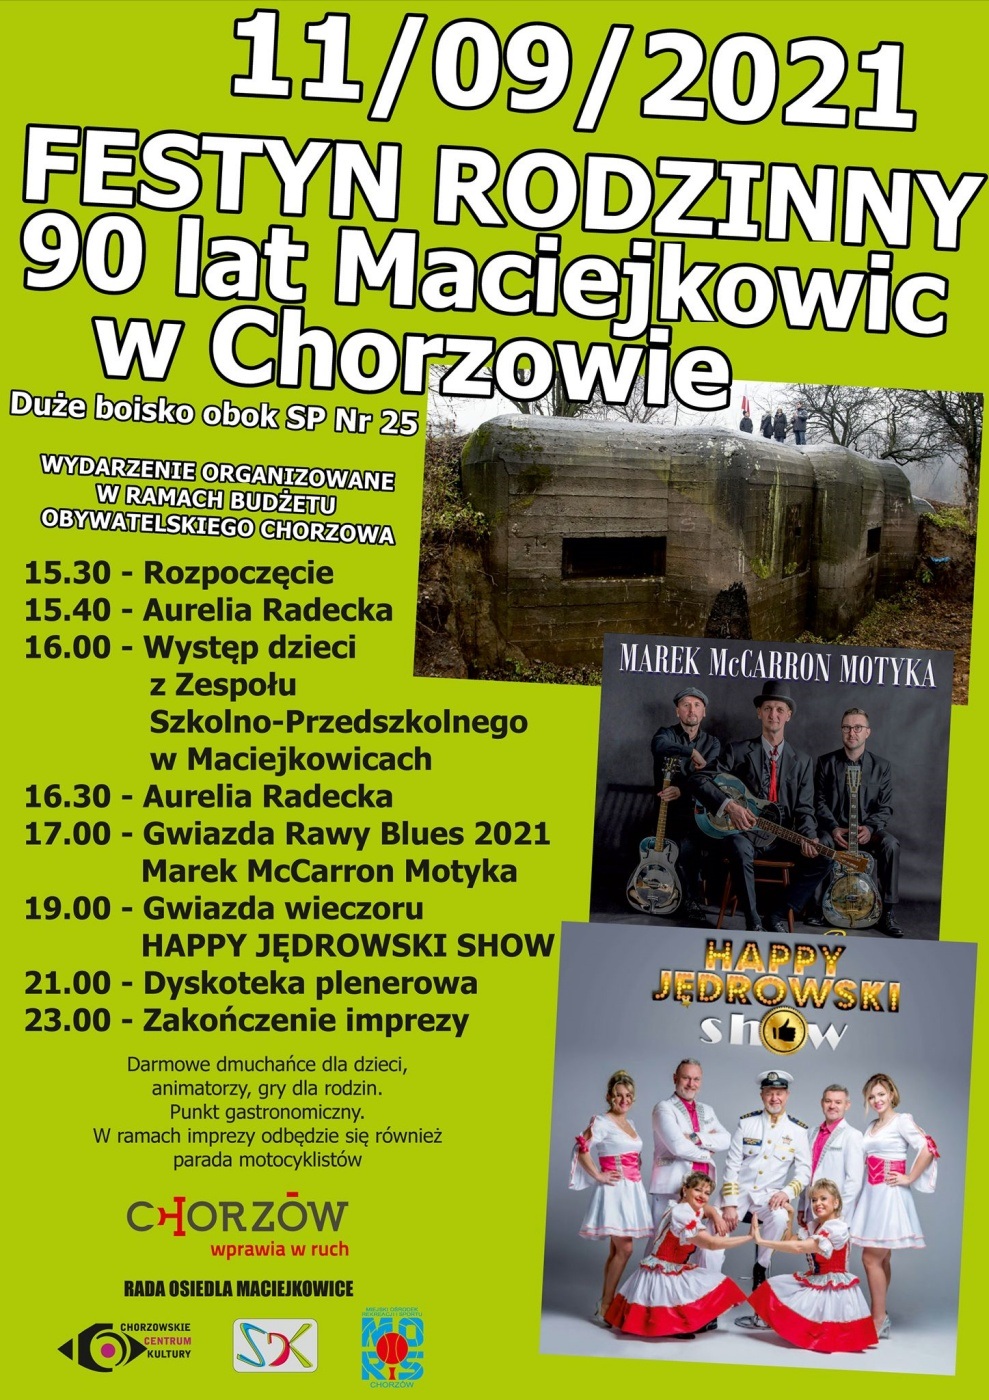 Festyn Rodzinny w Maciejkowicach - harmonogram